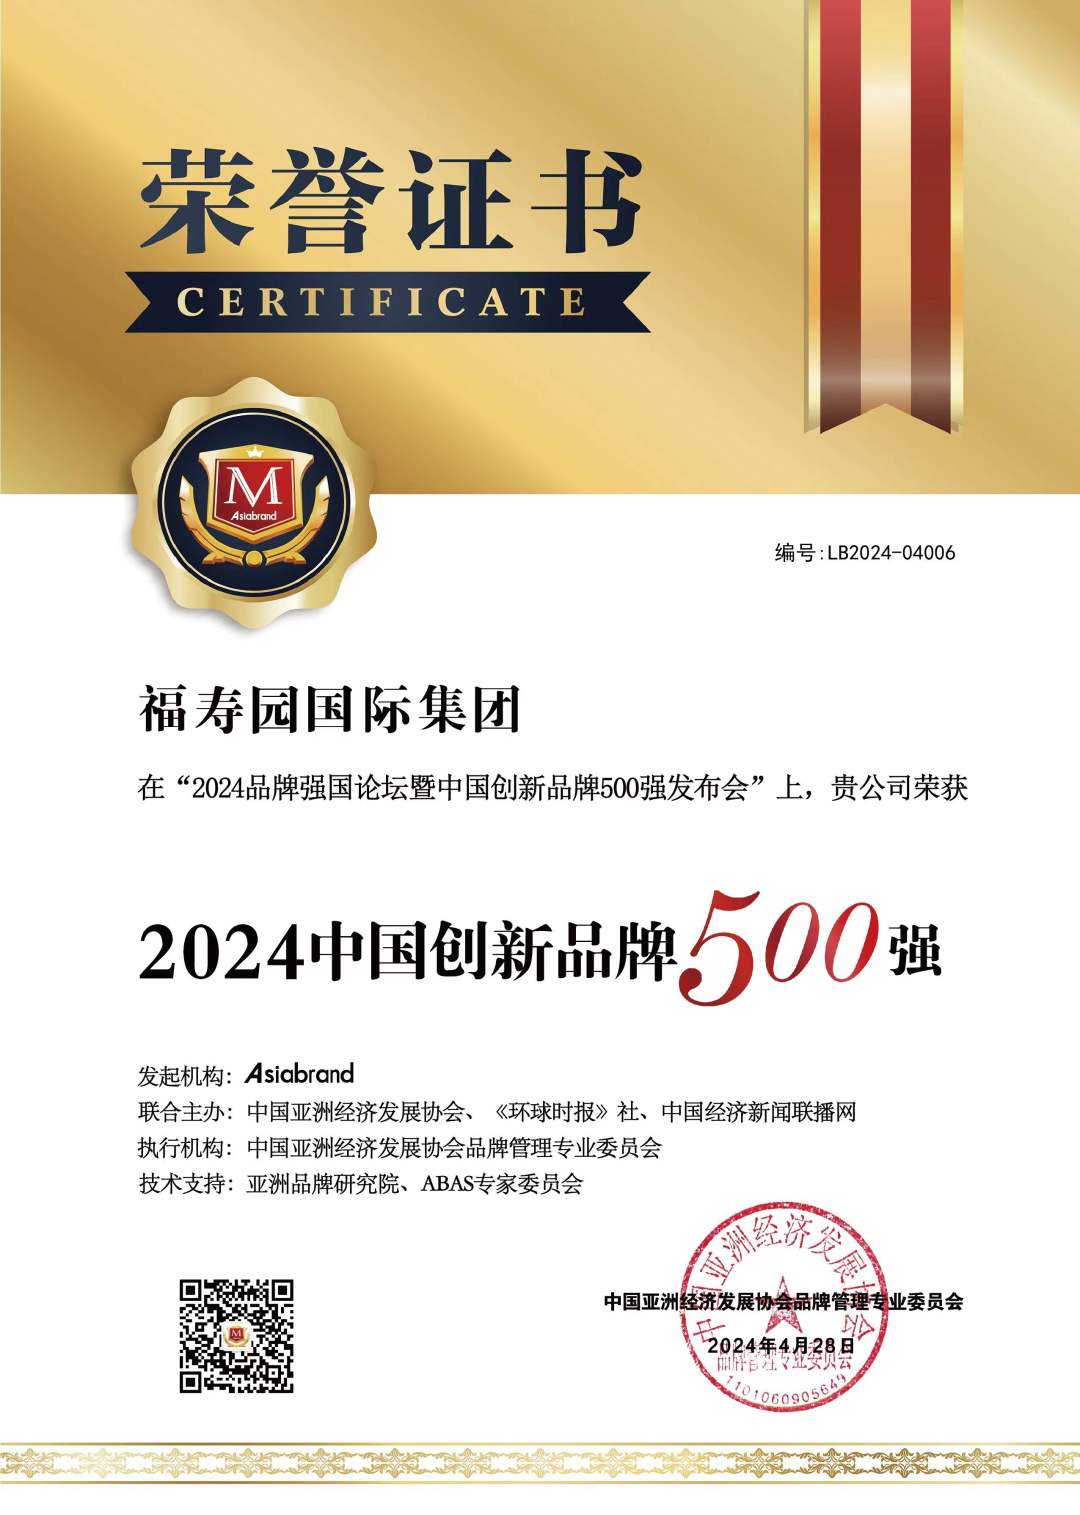 品牌价值获评价139.95亿元 福寿园(01448)入围“2024中国创新品牌500强”